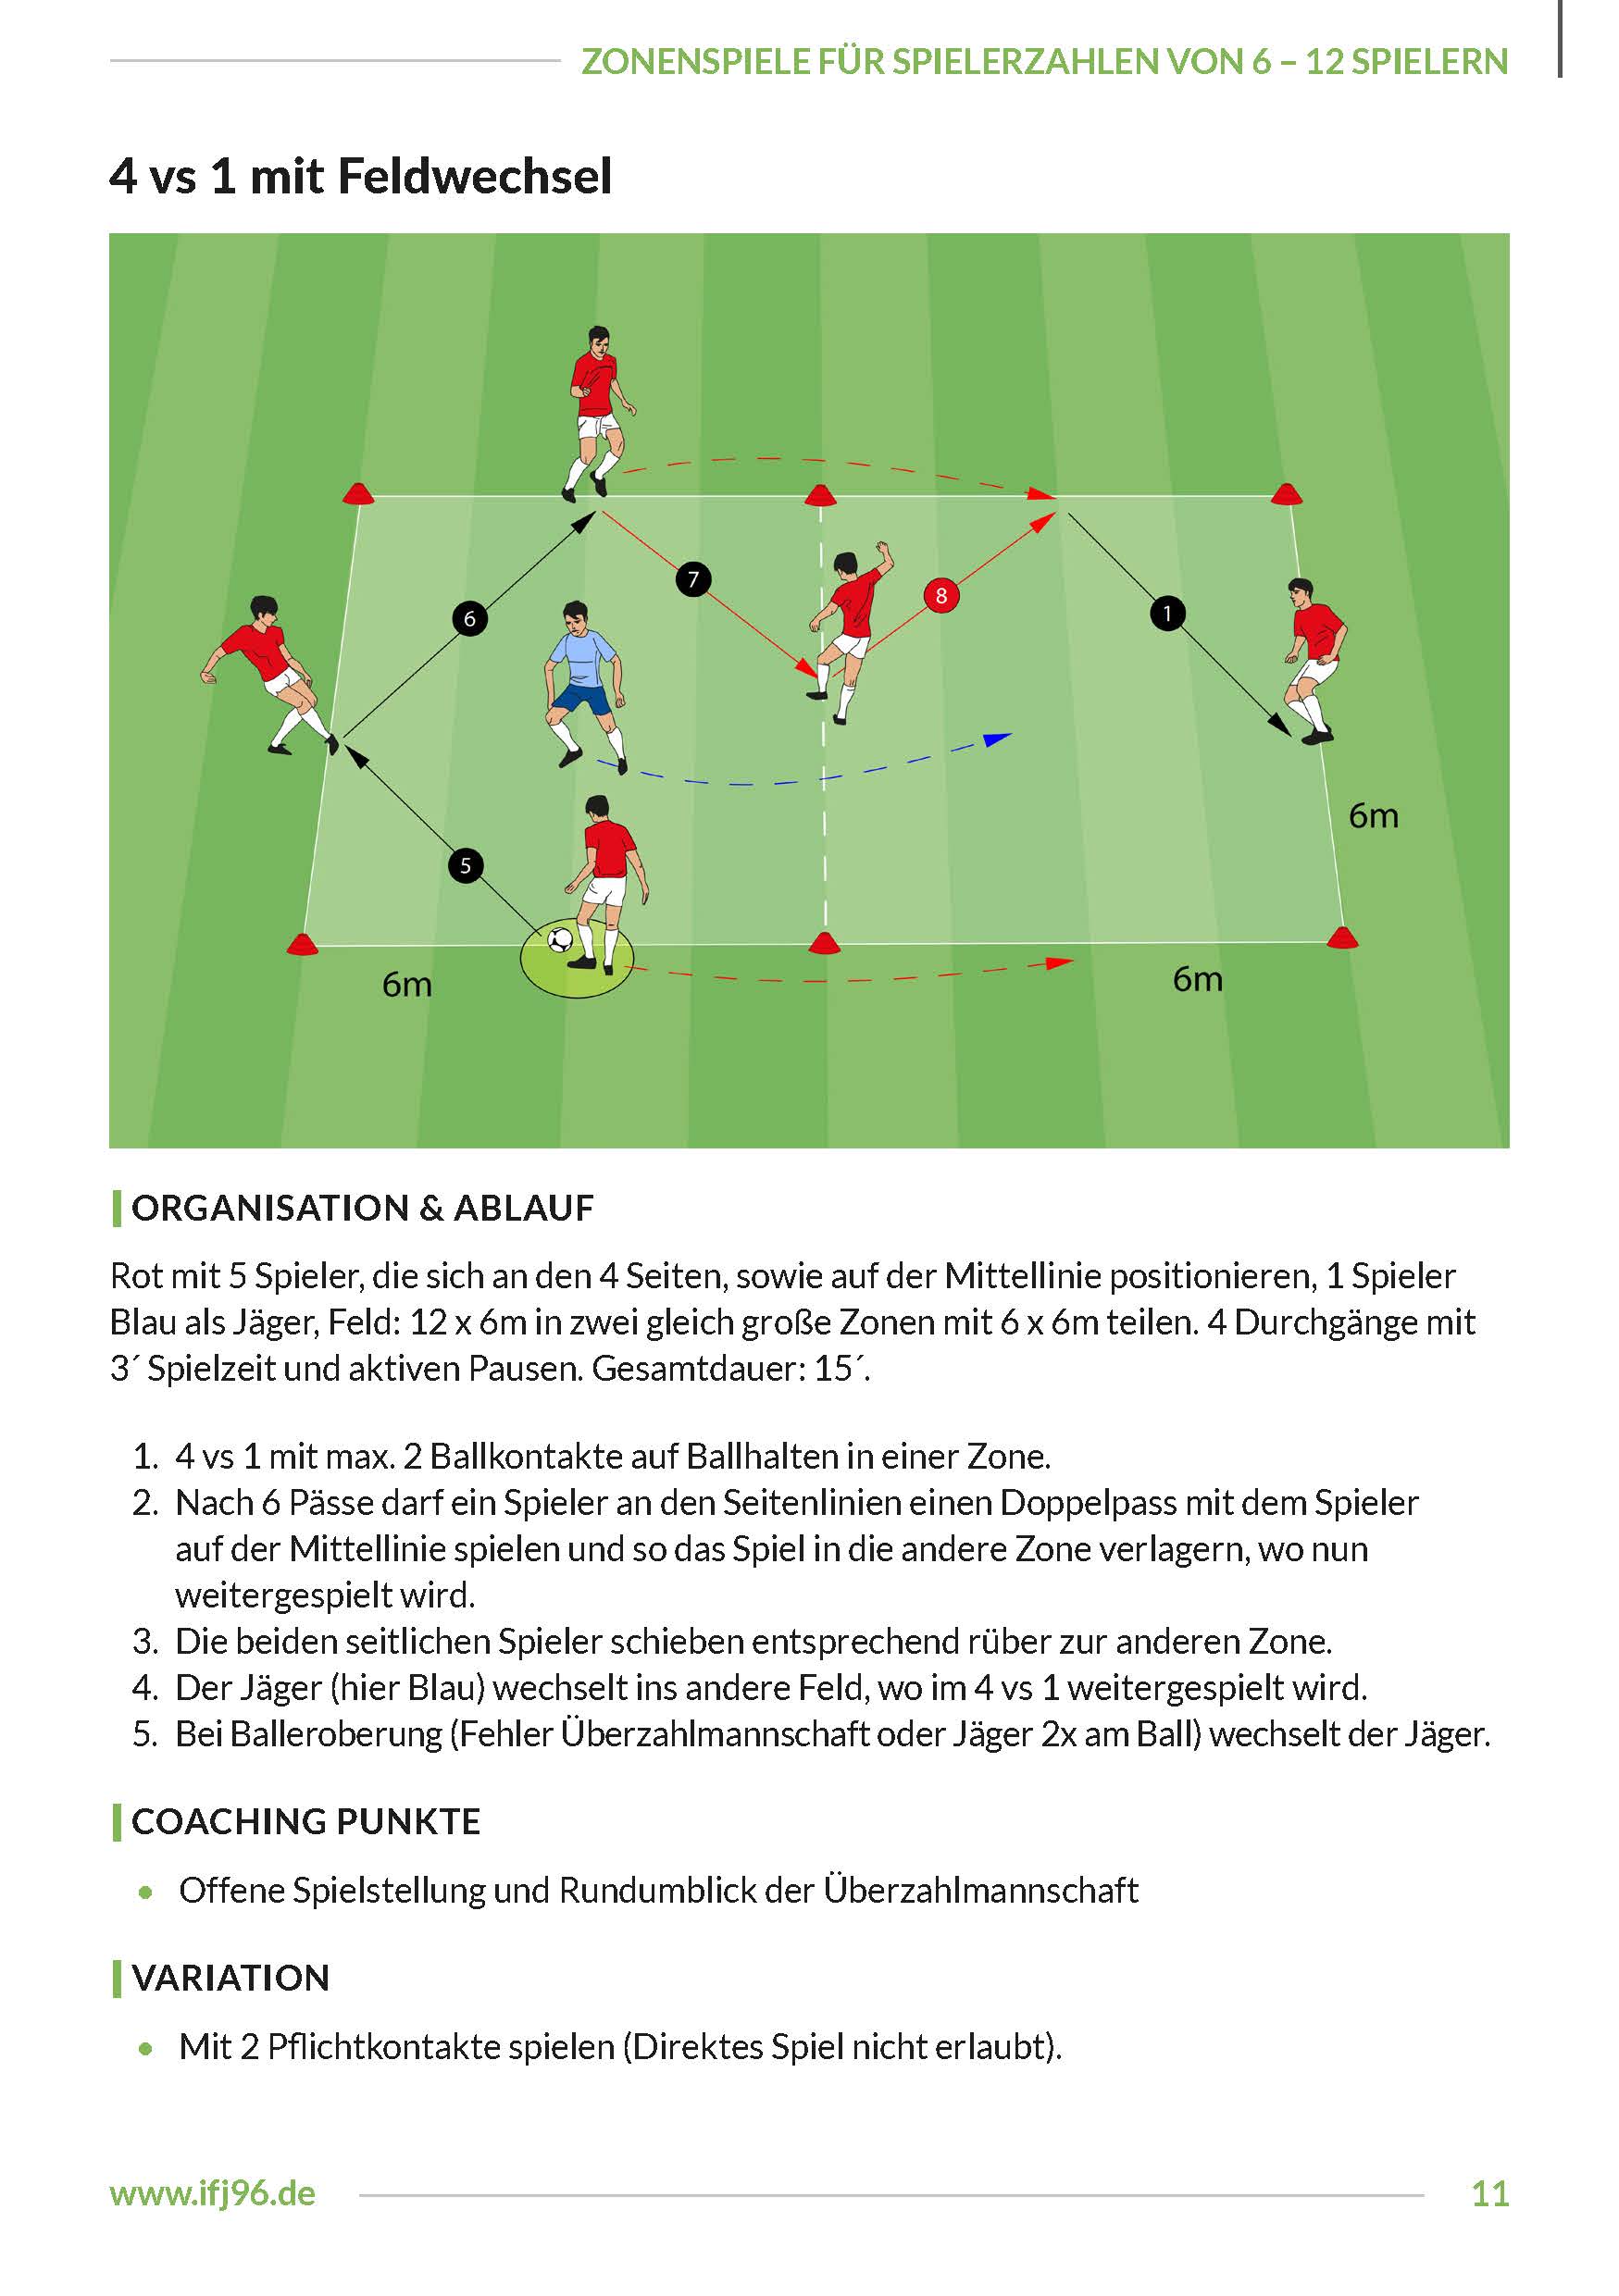 Flexible Trainingsplanung 5 - Zonenspiele für 6 bis 12 Spieler (eBook)